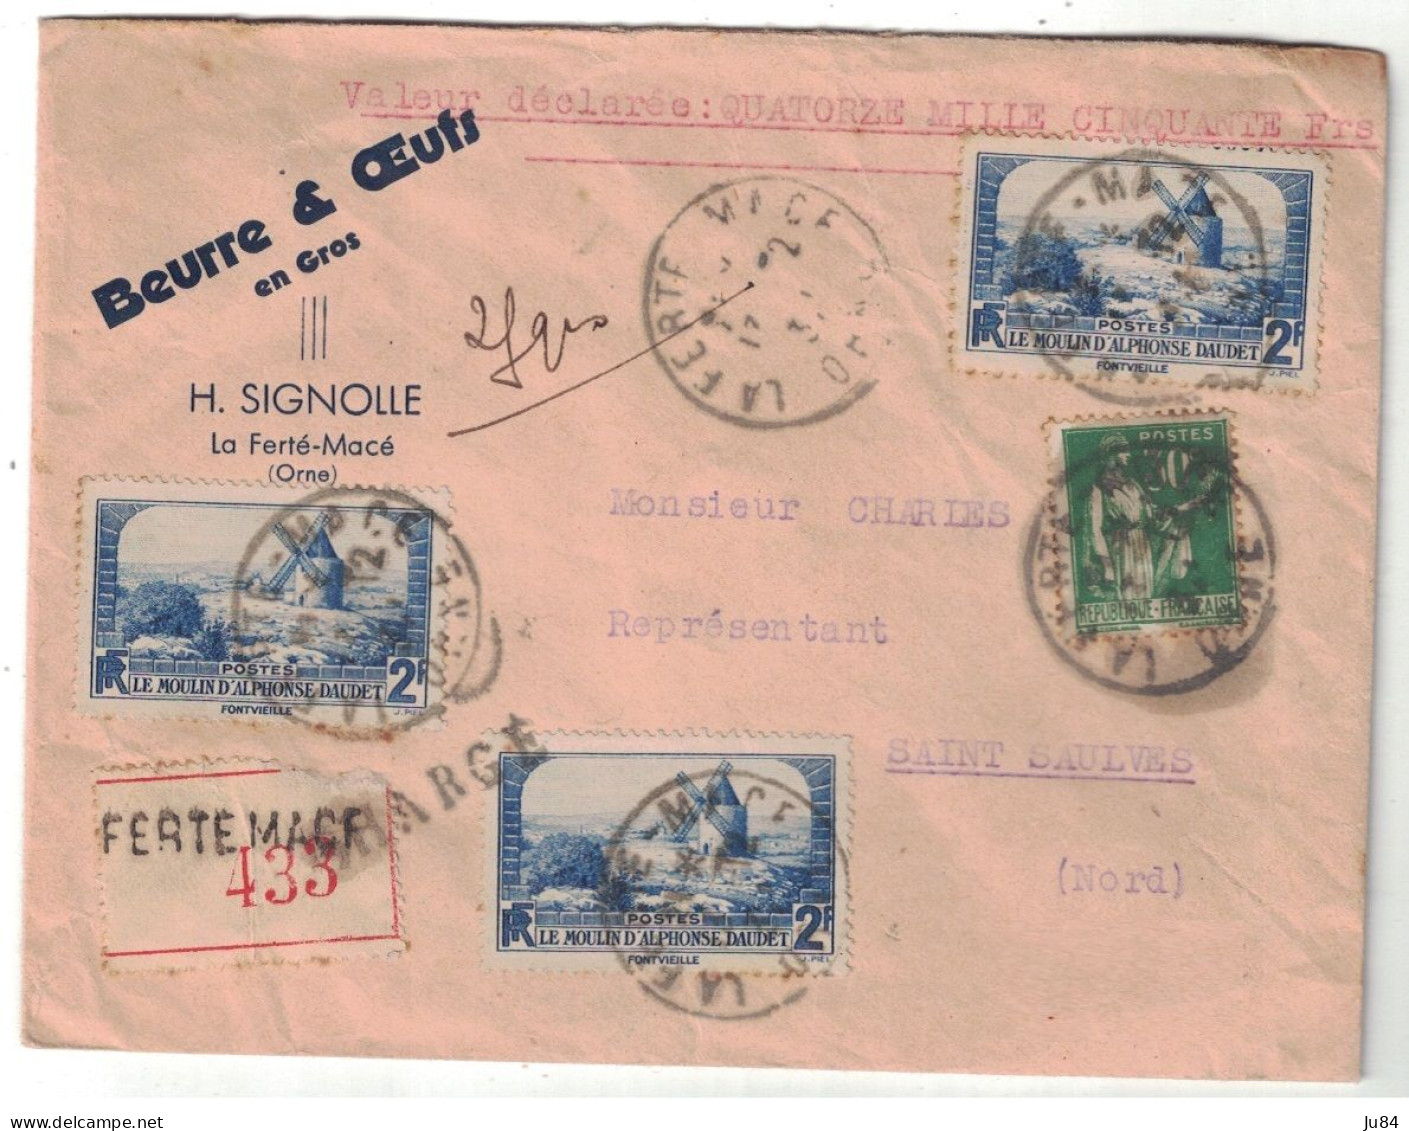 Orne - La Ferté-Macé - Beurre & Oeufs - Valeur Déclarrée - Lettre Recommandée Avec Cachets De Cire Pour Saint Saulves - Postal Rates